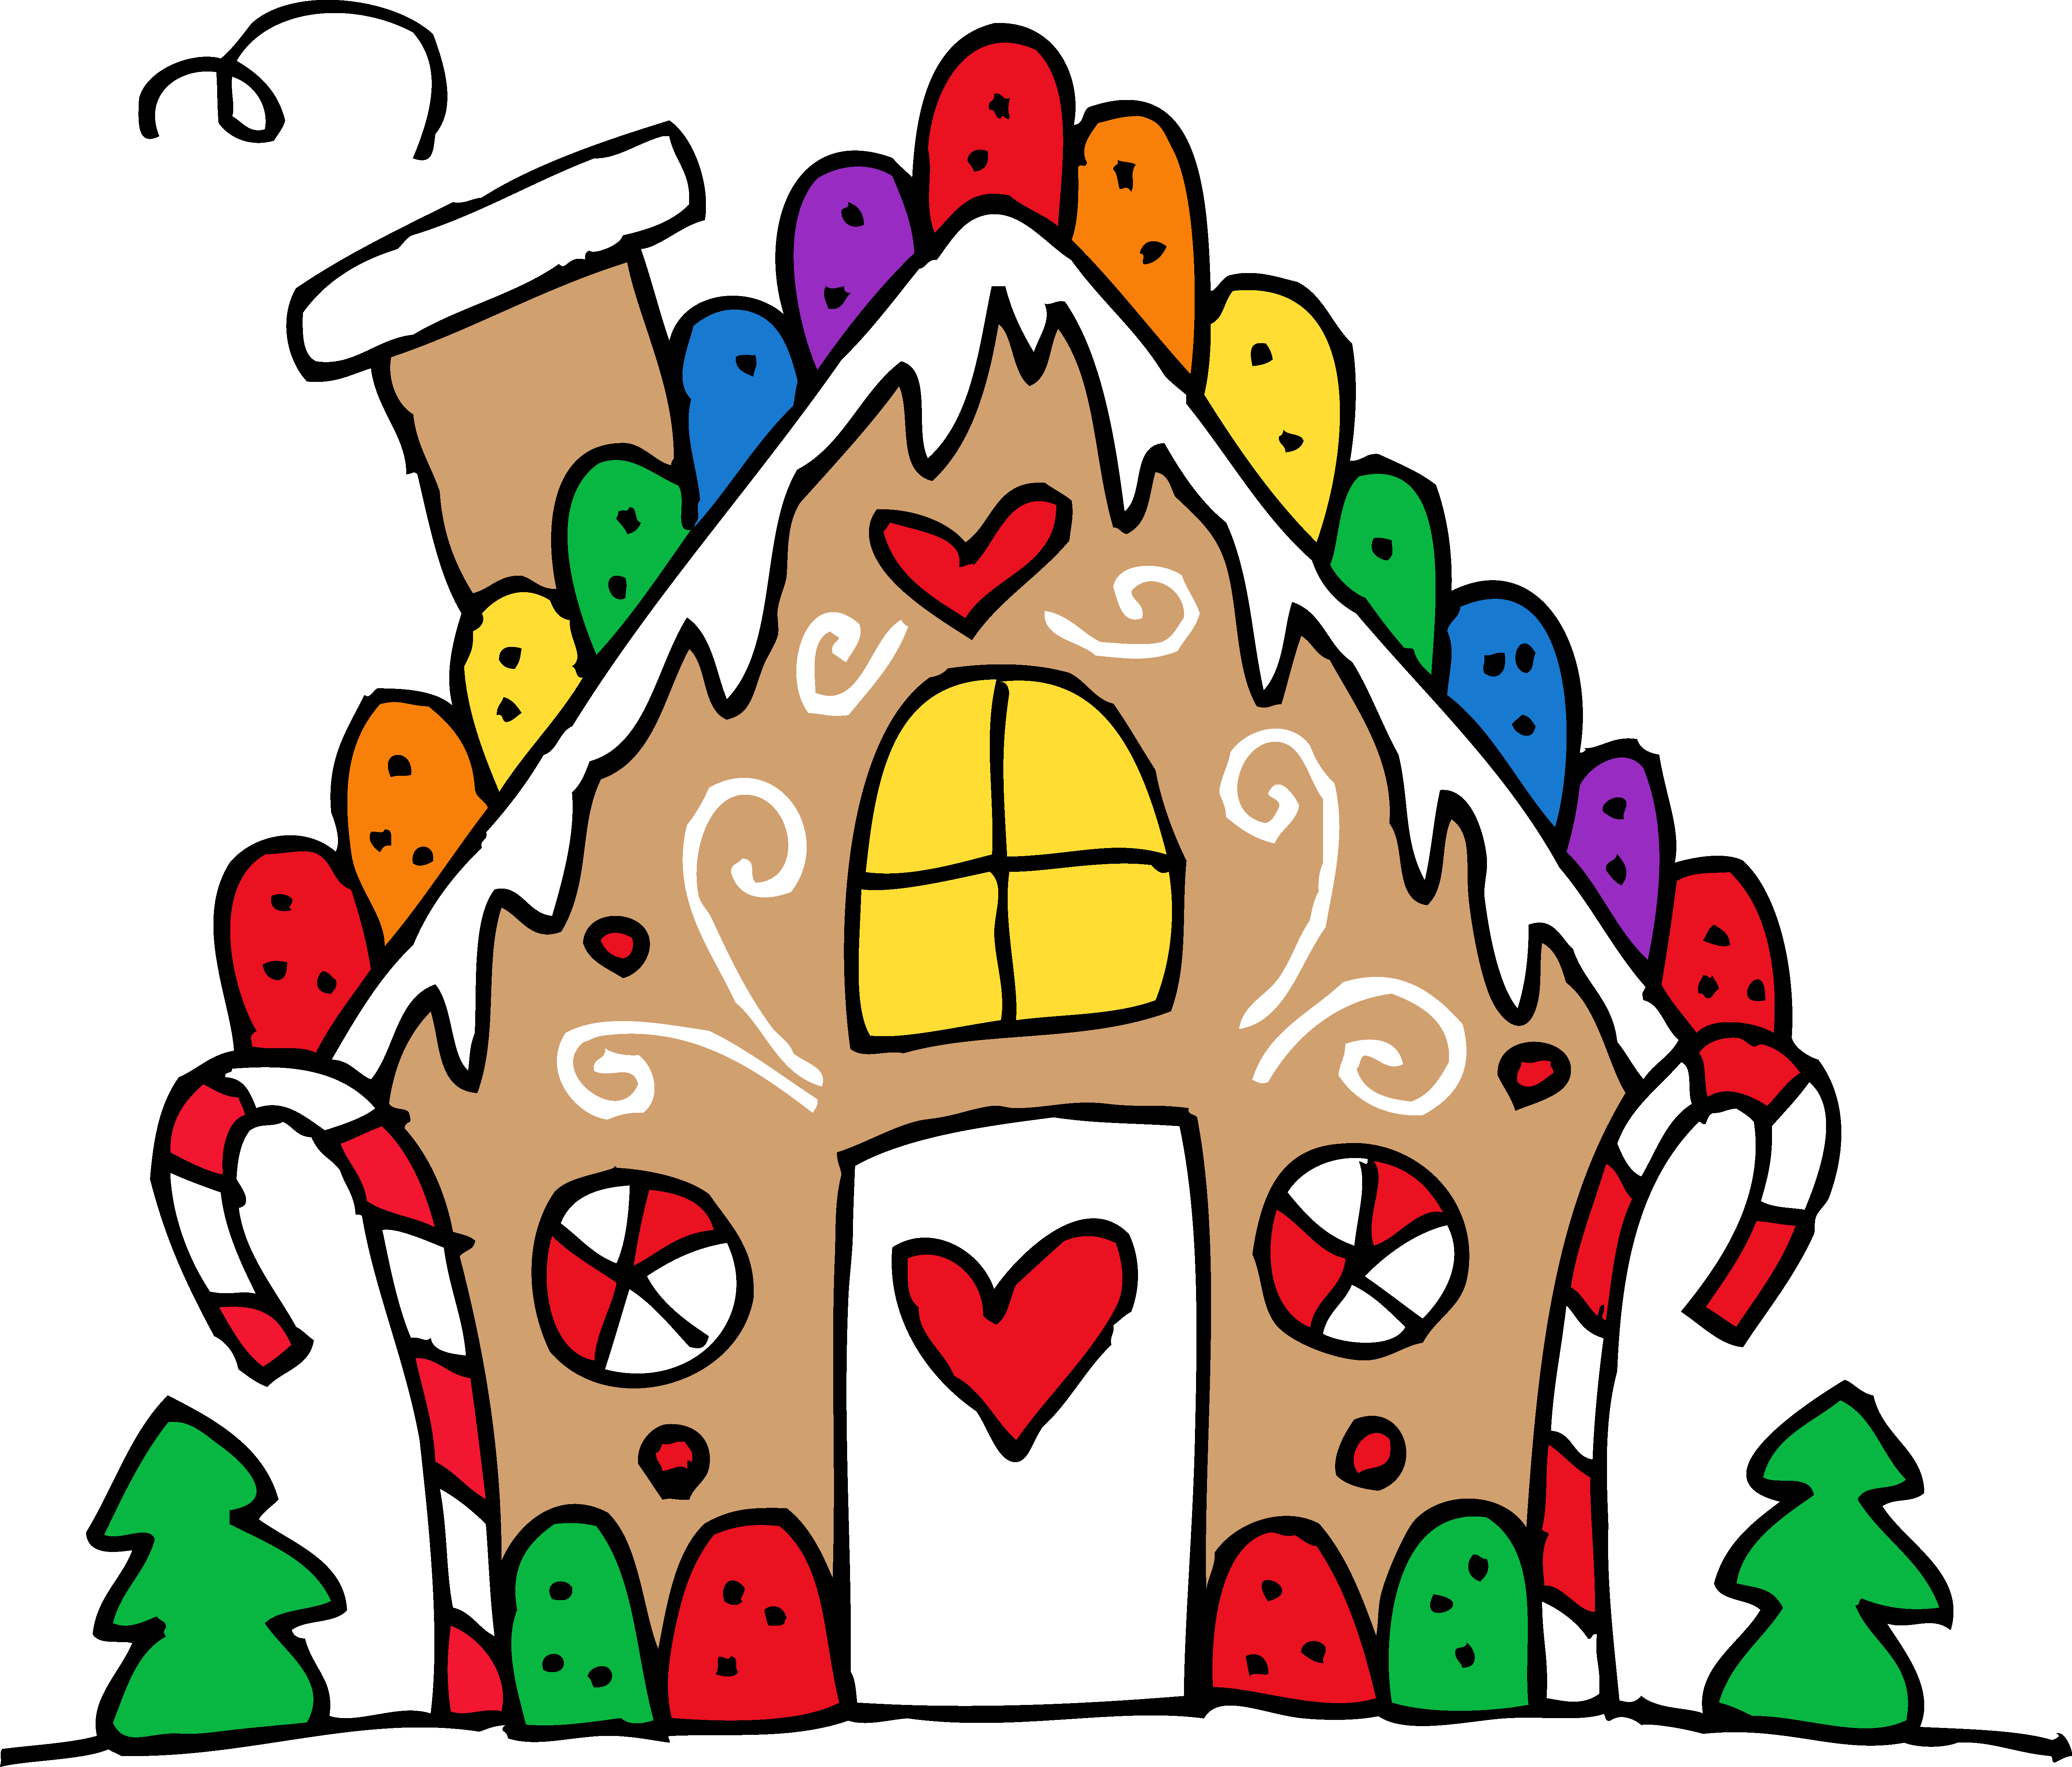 Christmas House Clip Art